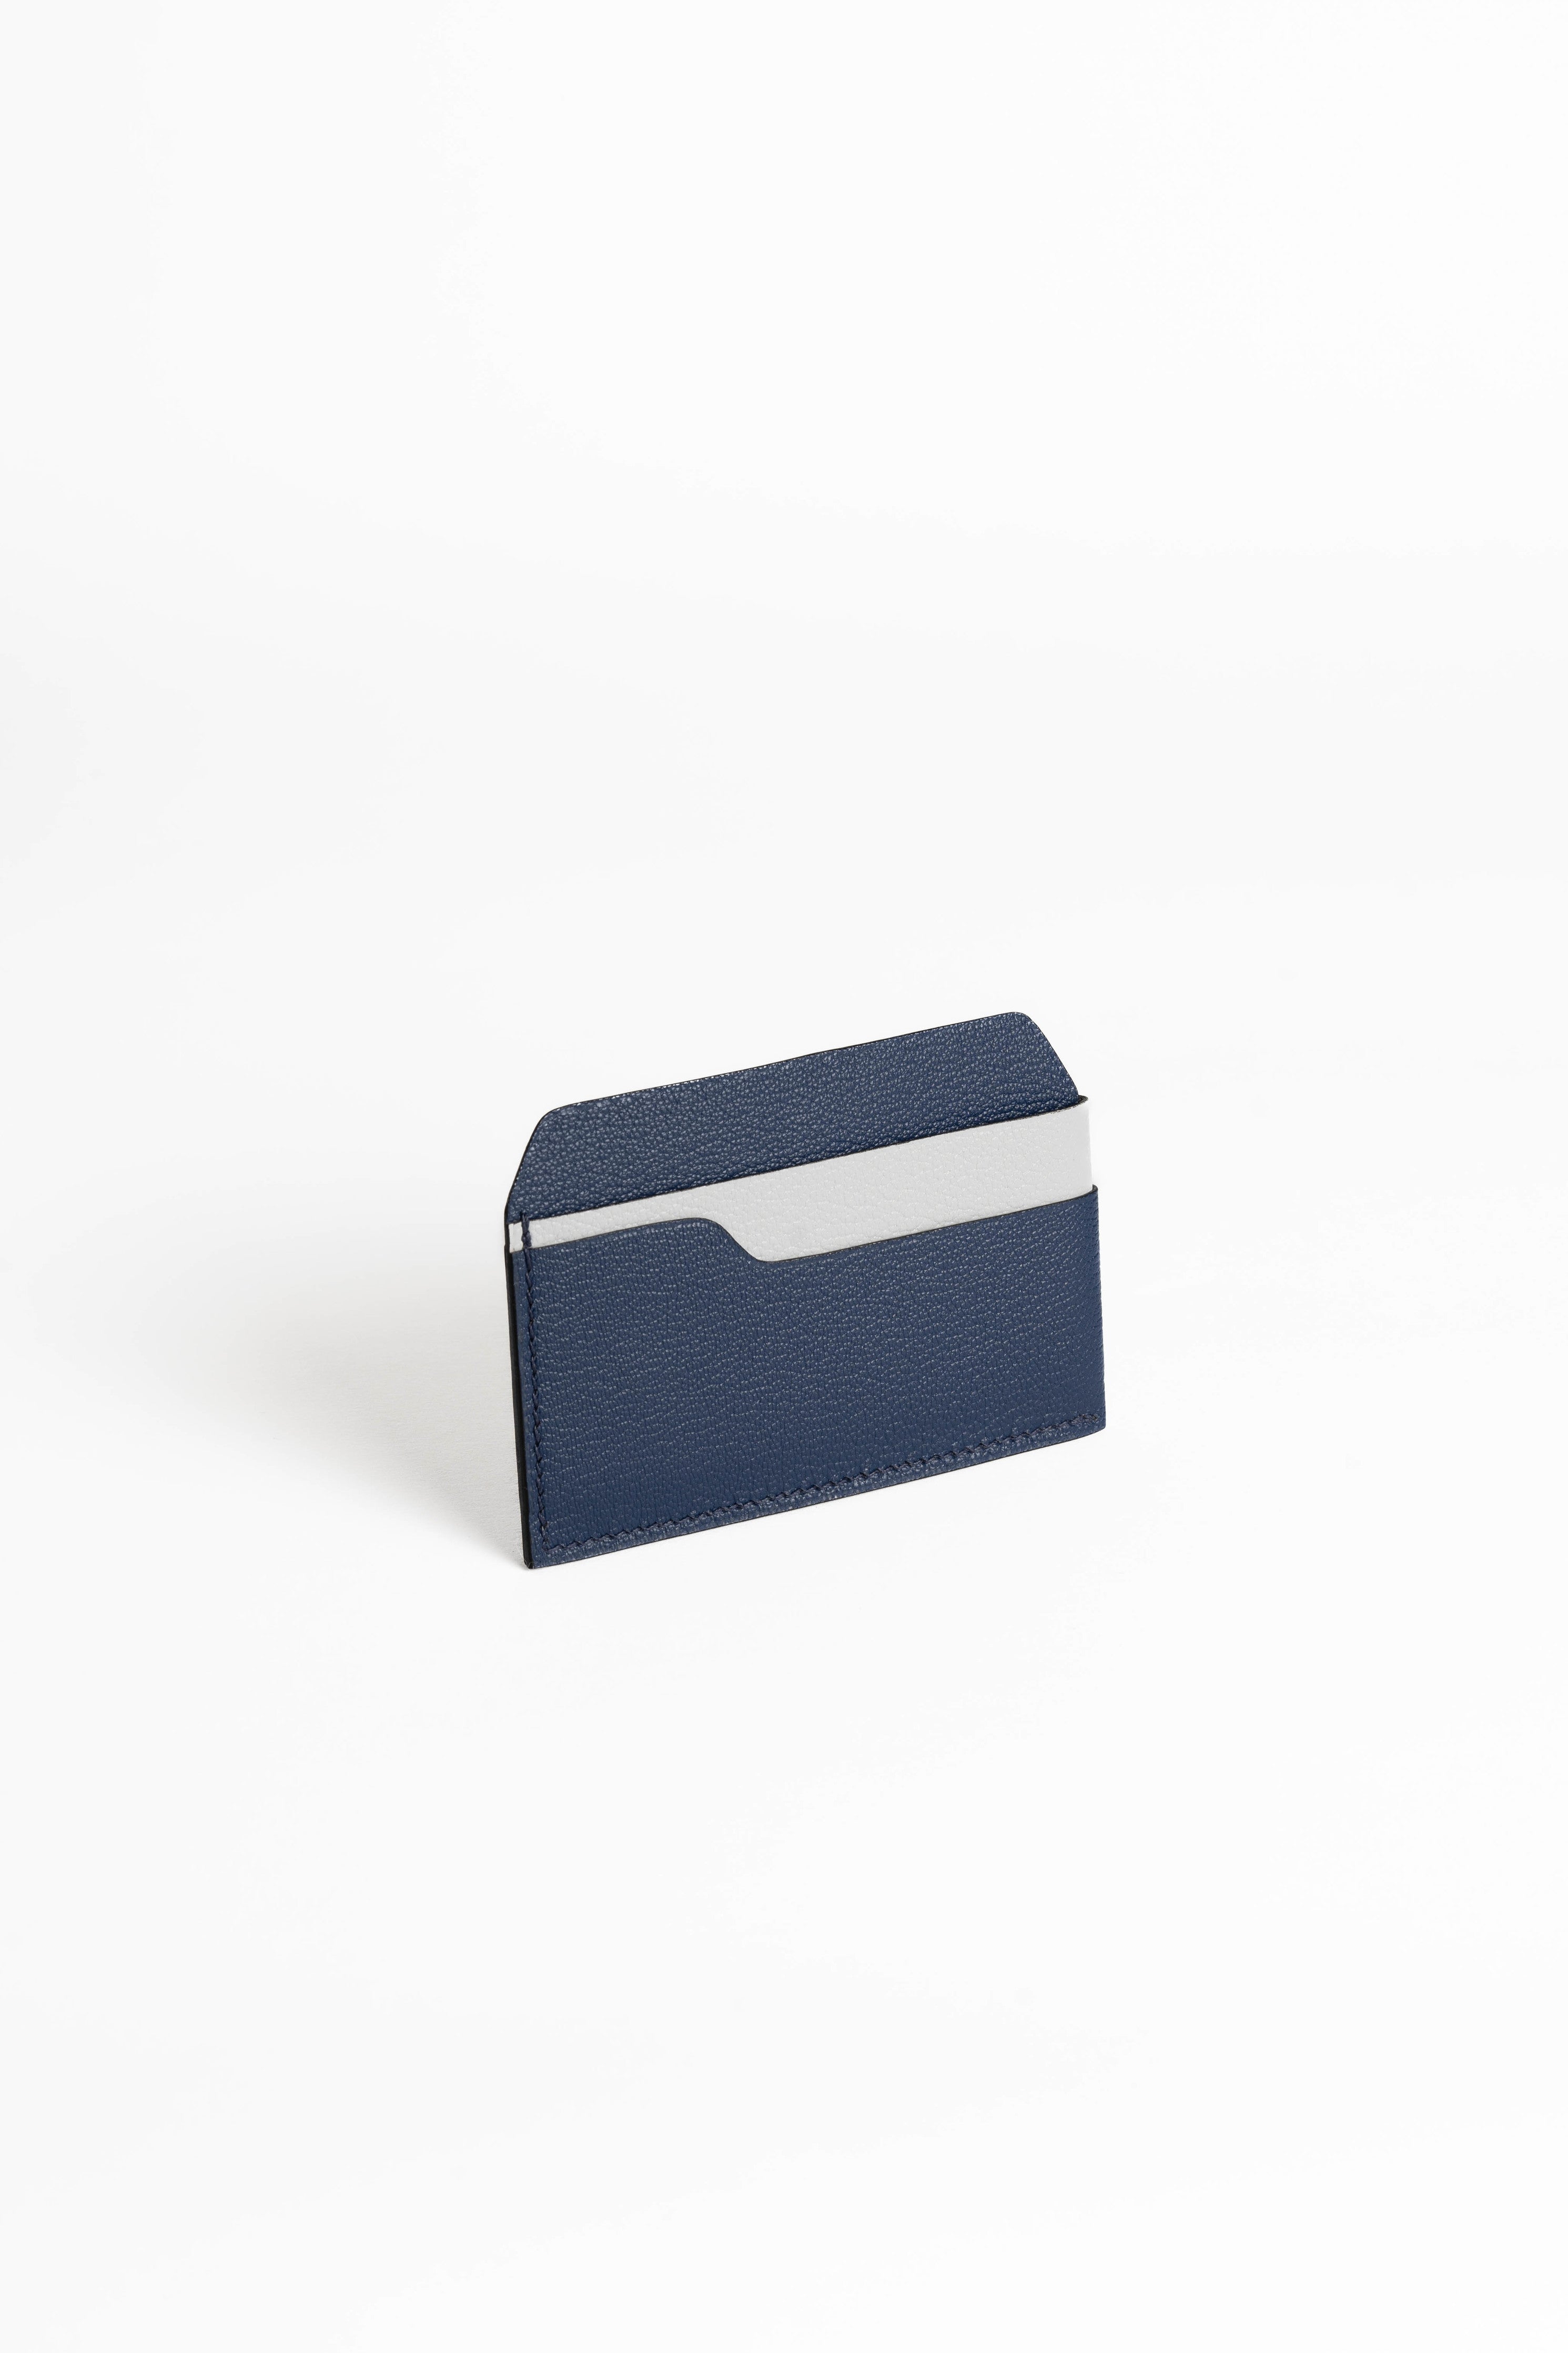 カードケース　オシャレ　ミニマム　ブルー　マリン　card case blue marine  minimal designer 